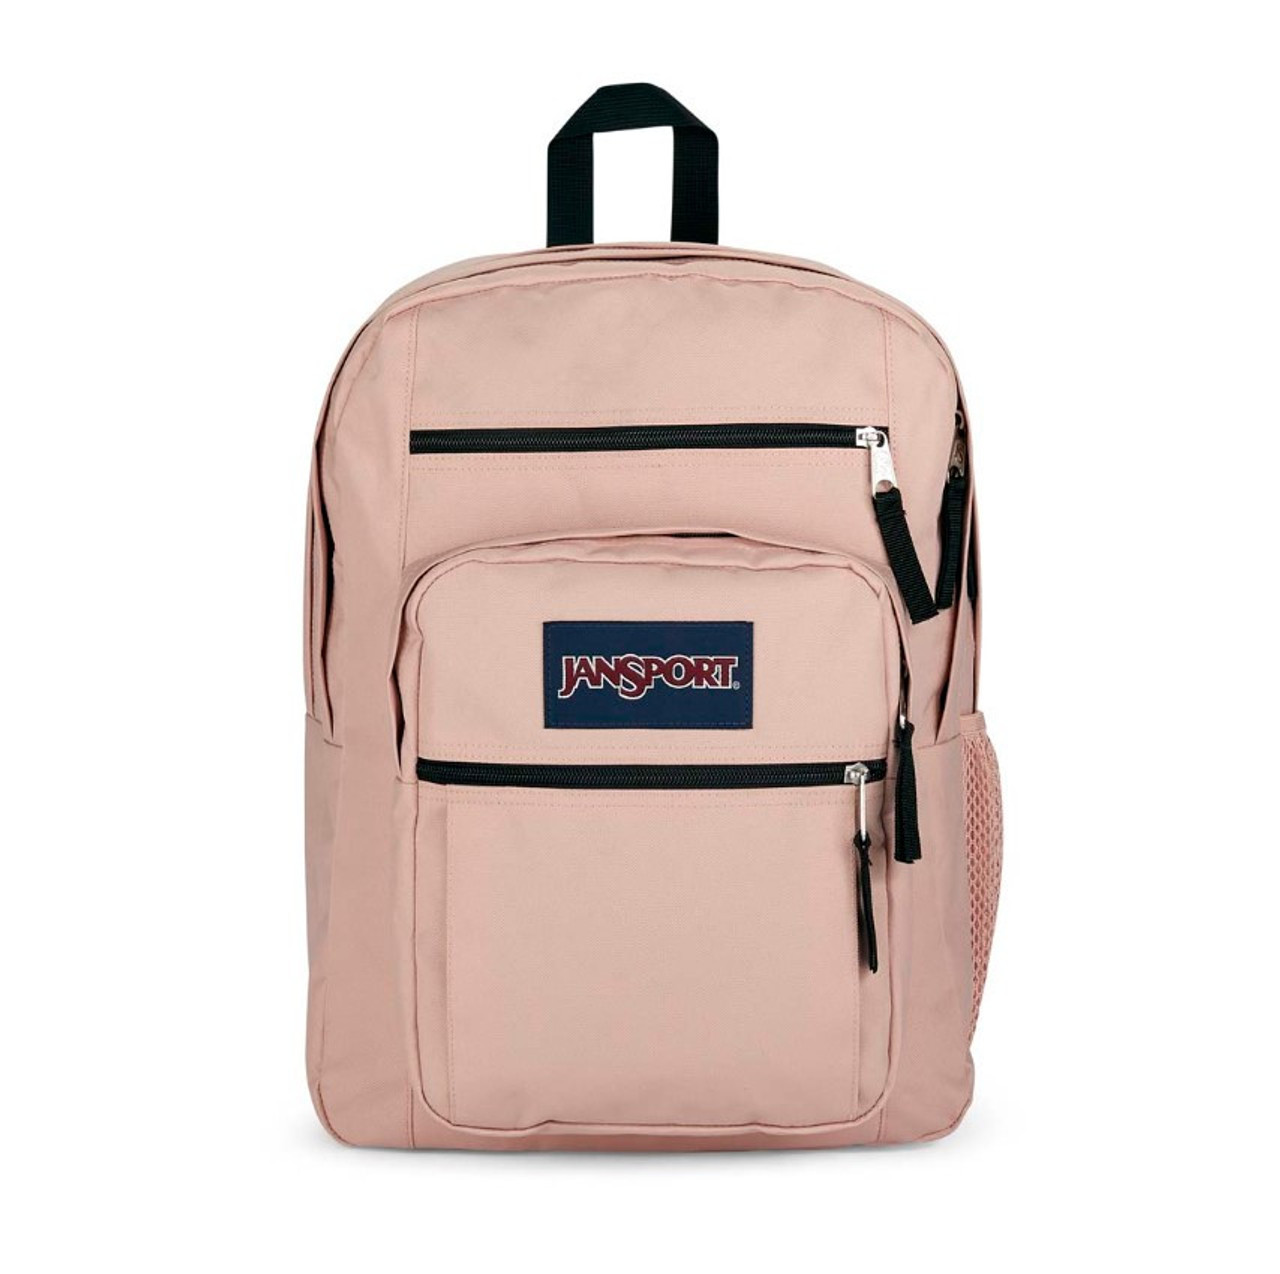 Misty Backpack Shoulder Bag Hardware Kit - Gold